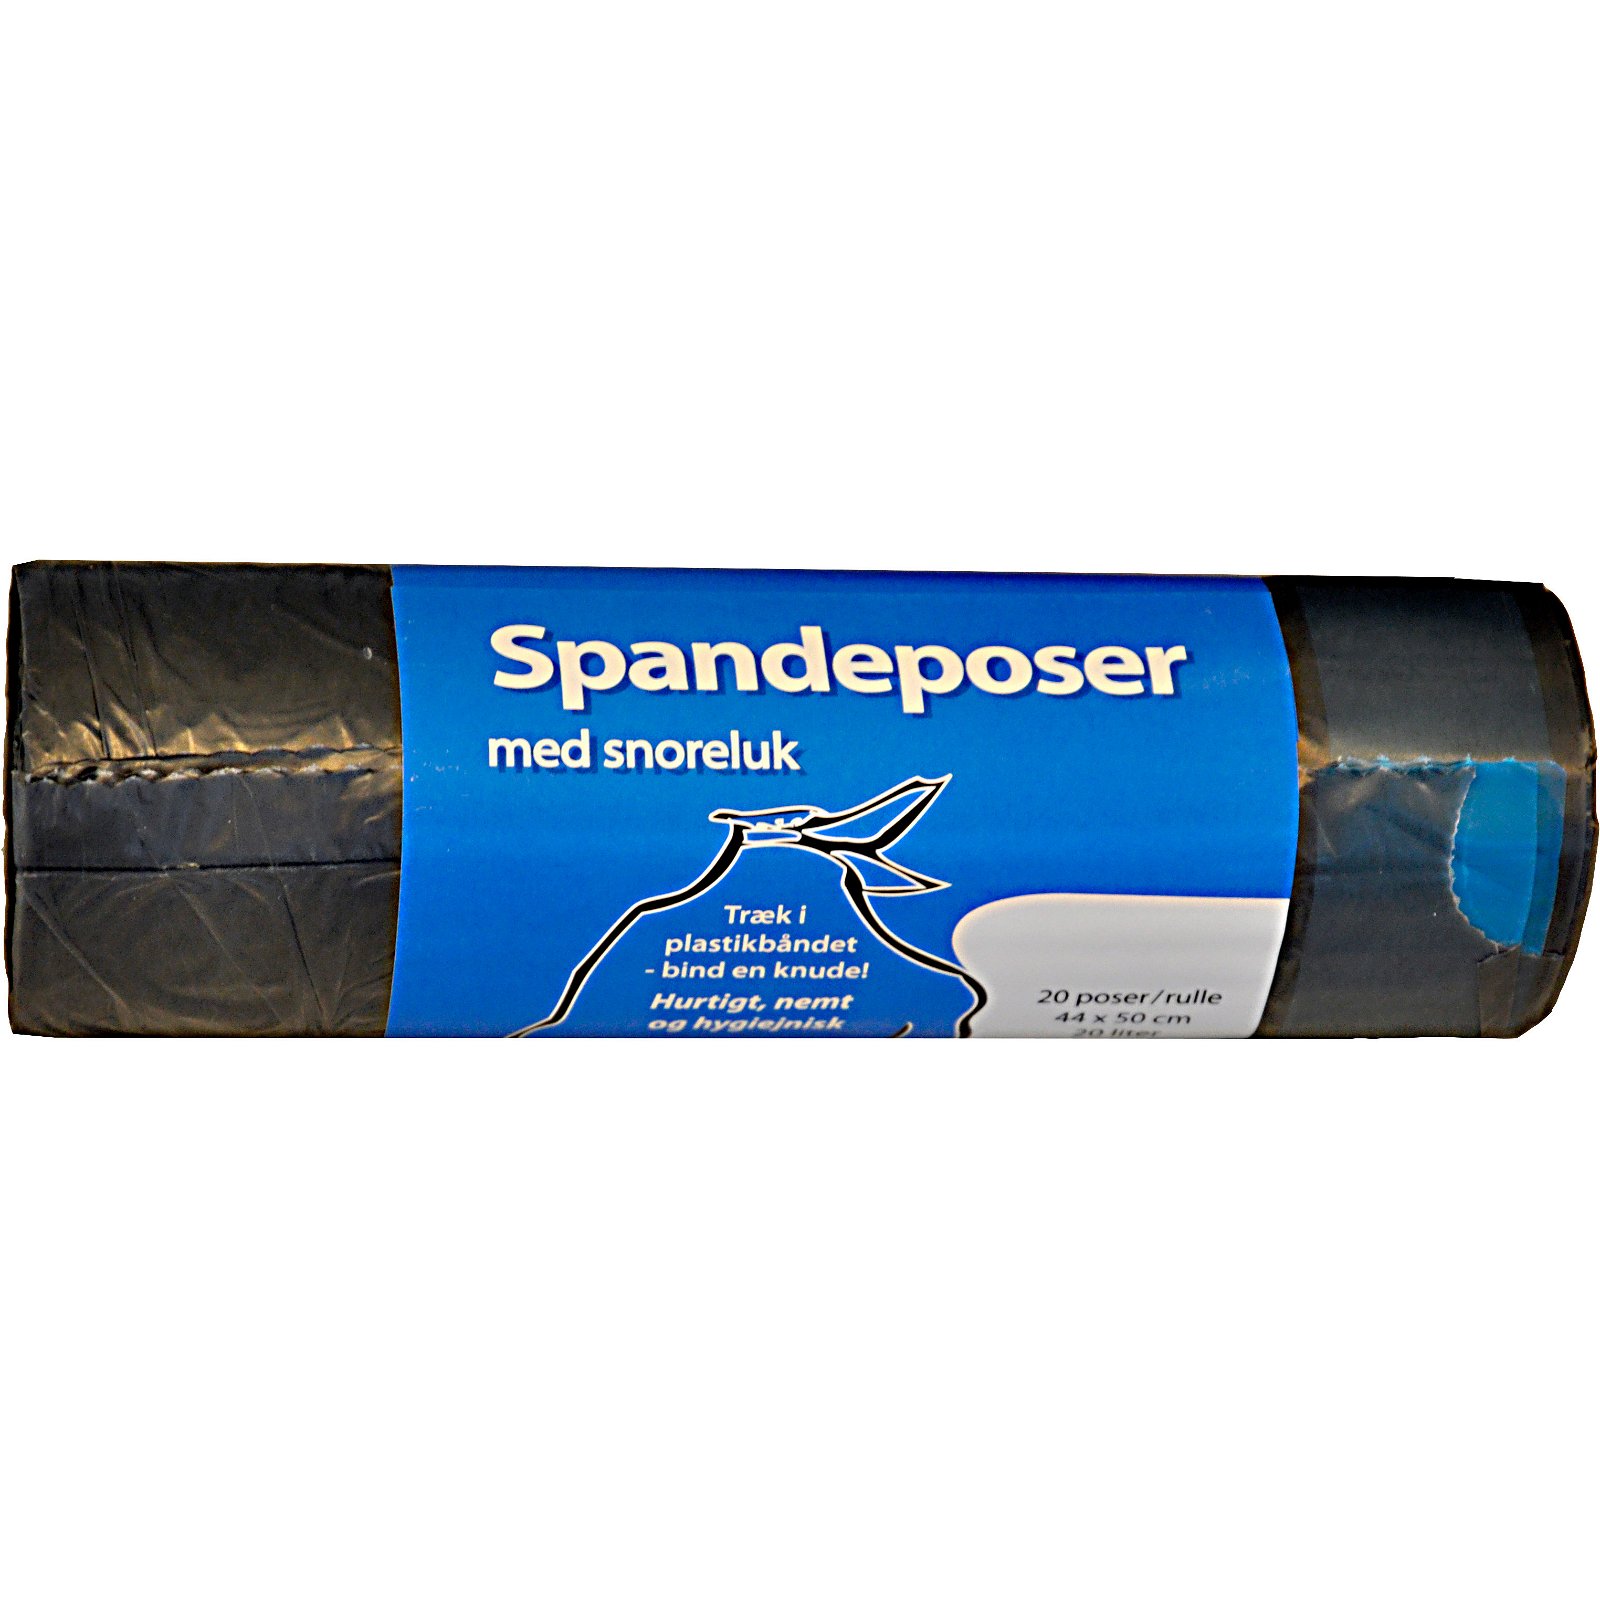 Spandeposer